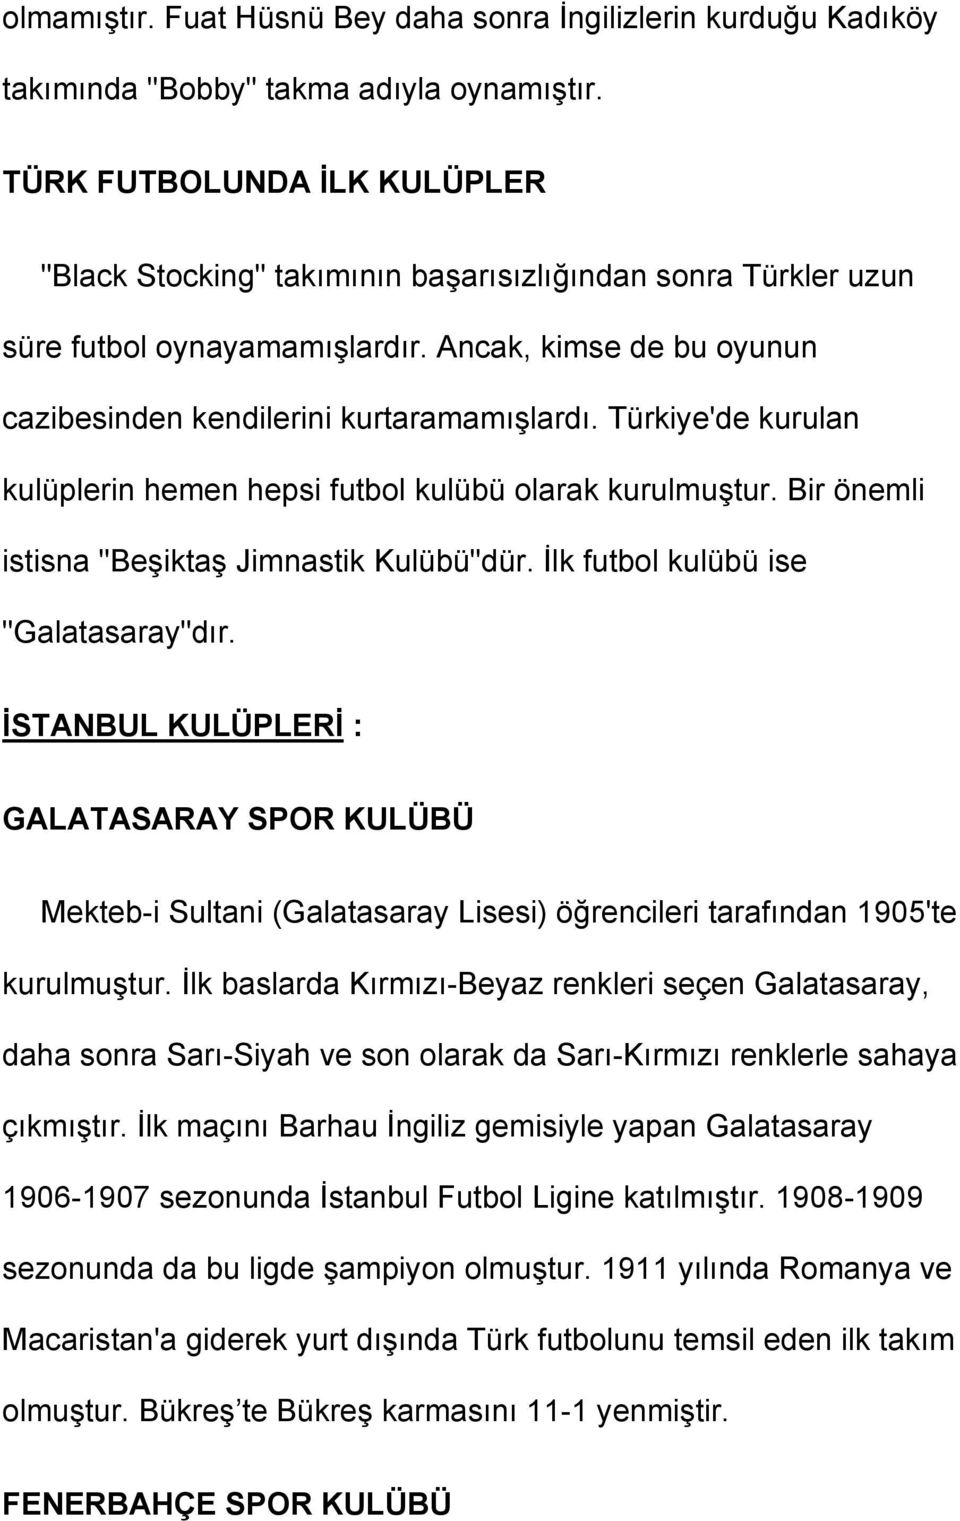 Türkiye'de kurulan kulüplerin hemen hepsi futbol kulübü olarak kurulmuştur. Bir önemli istisna "Beşiktaş Jimnastik Kulübü"dür. İlk futbol kulübü ise "Galatasaray"dır.